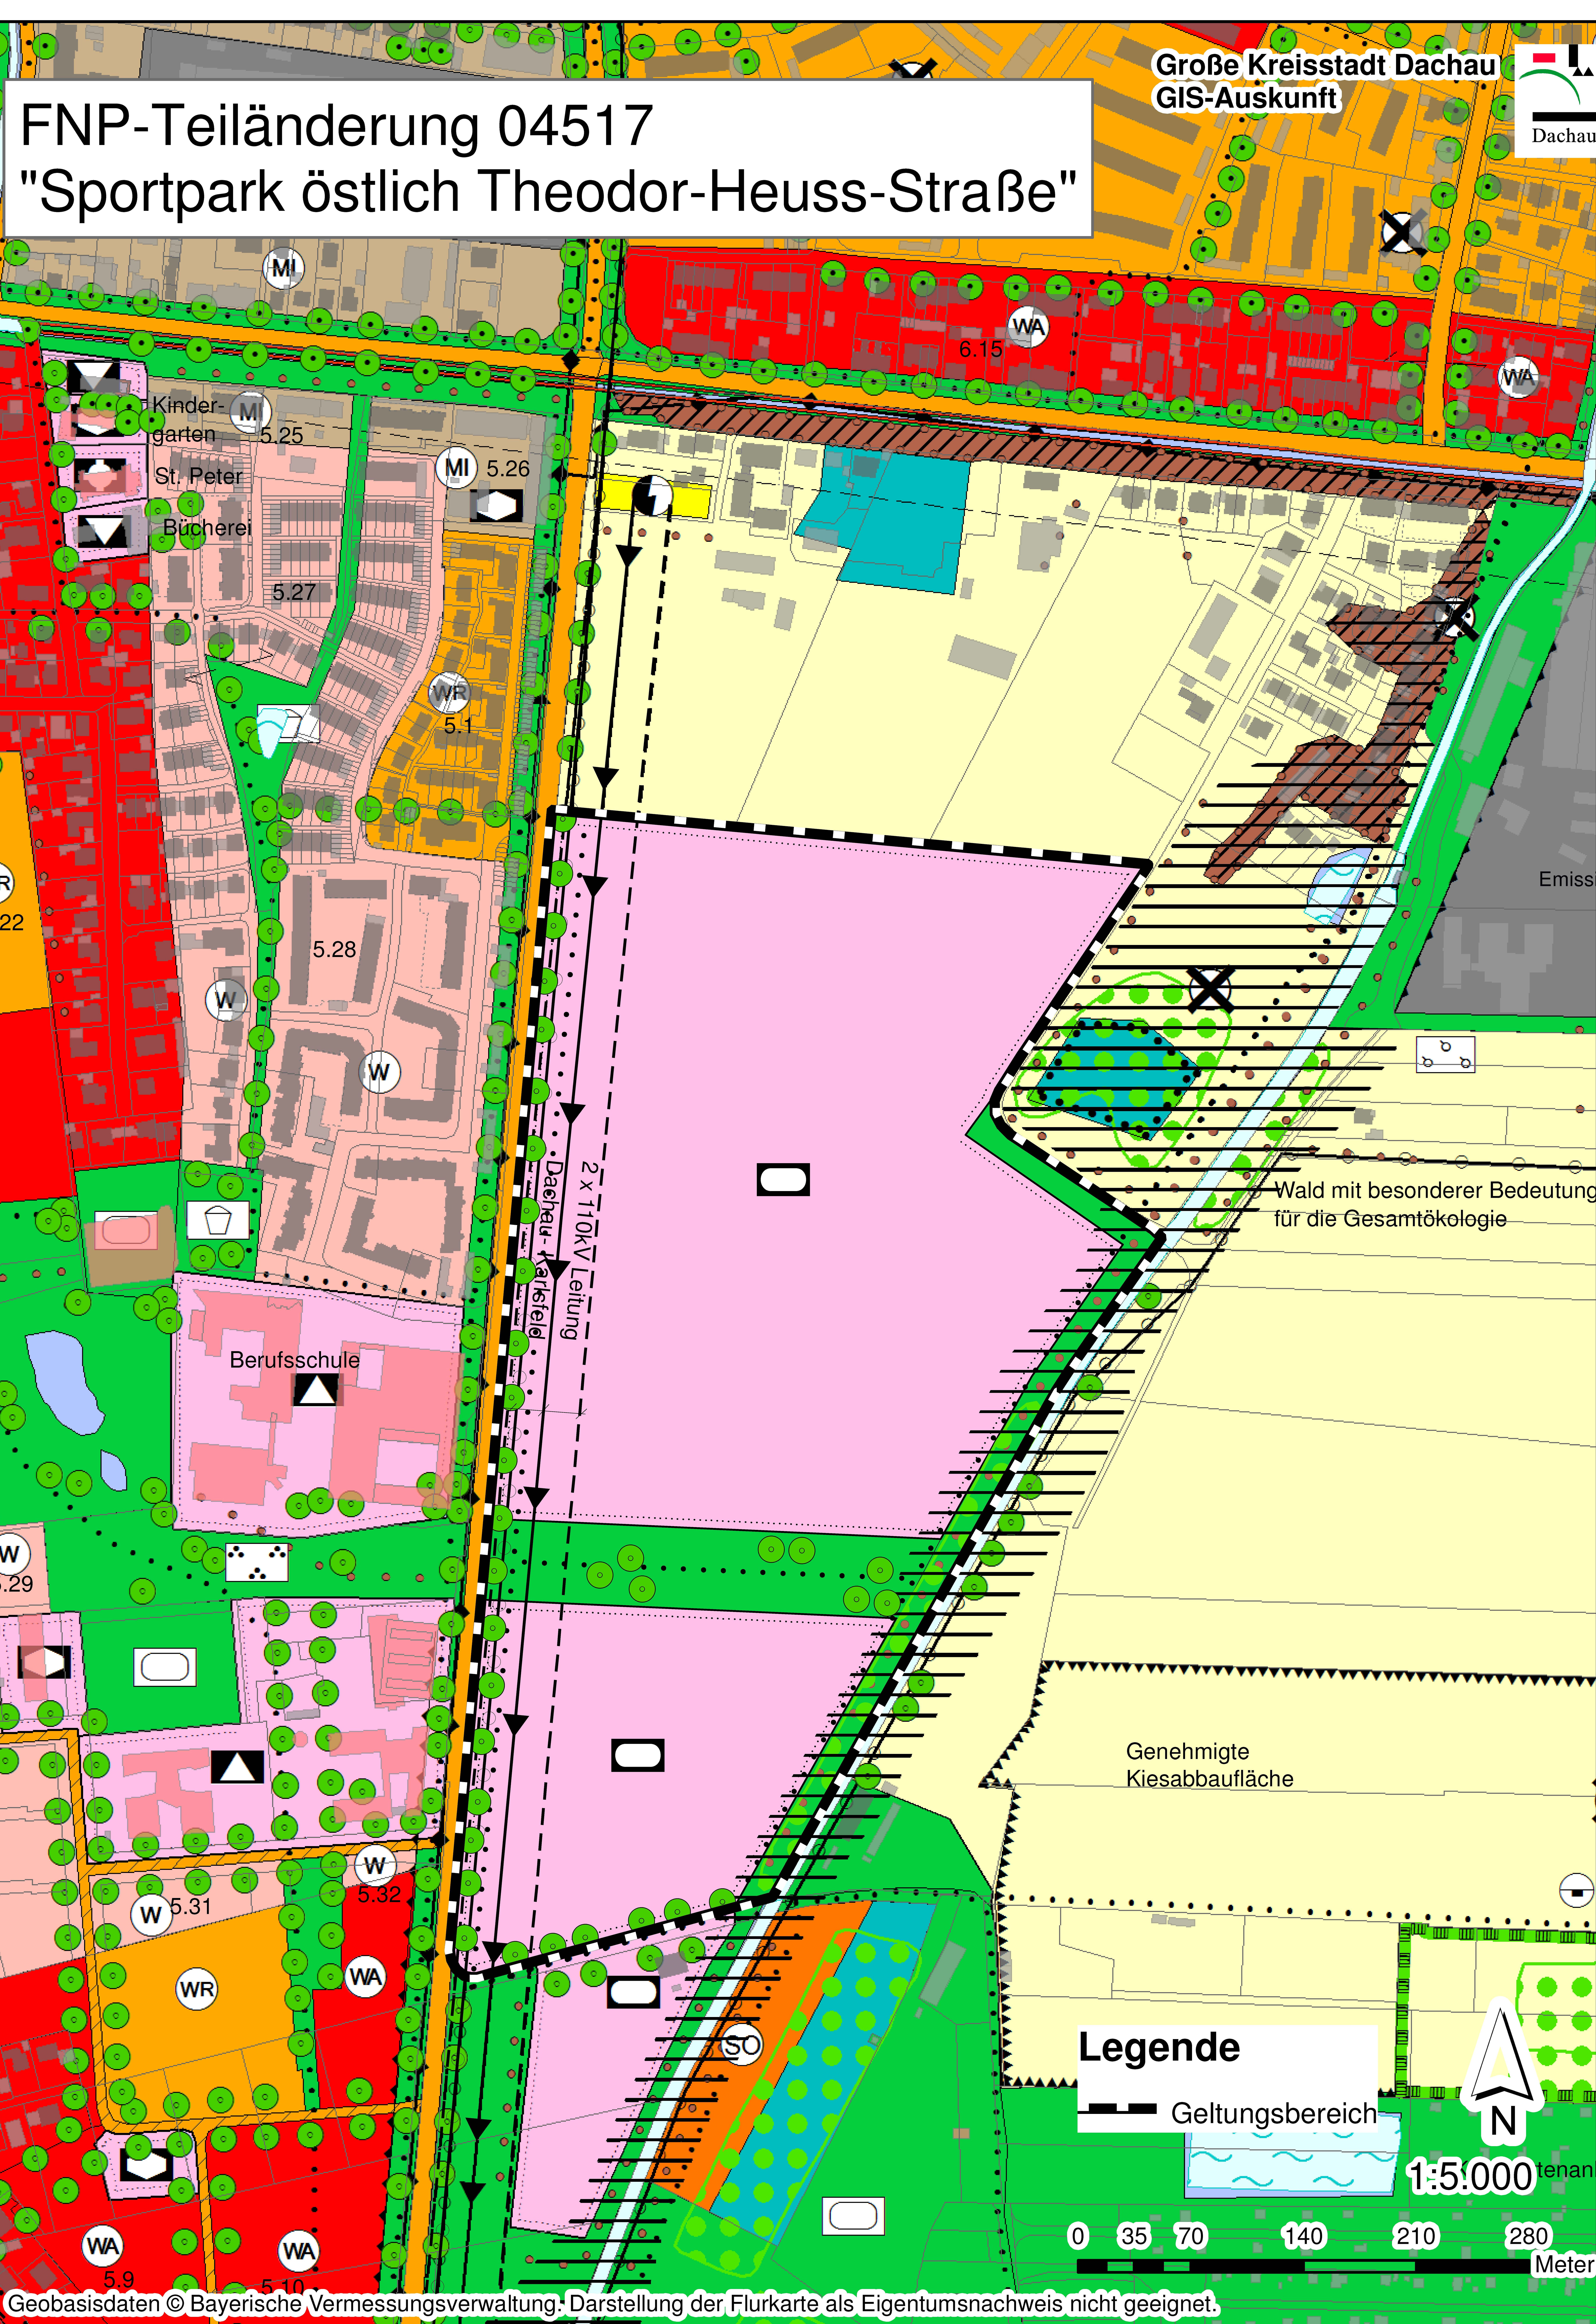 Mehrfarbiger Ausschnitt aus dem Flächennutzungsplan, der die Flächen für die geplante Aussiedlung des TSV 1865 östlich der Theodor-Heuss-Straße zeigt